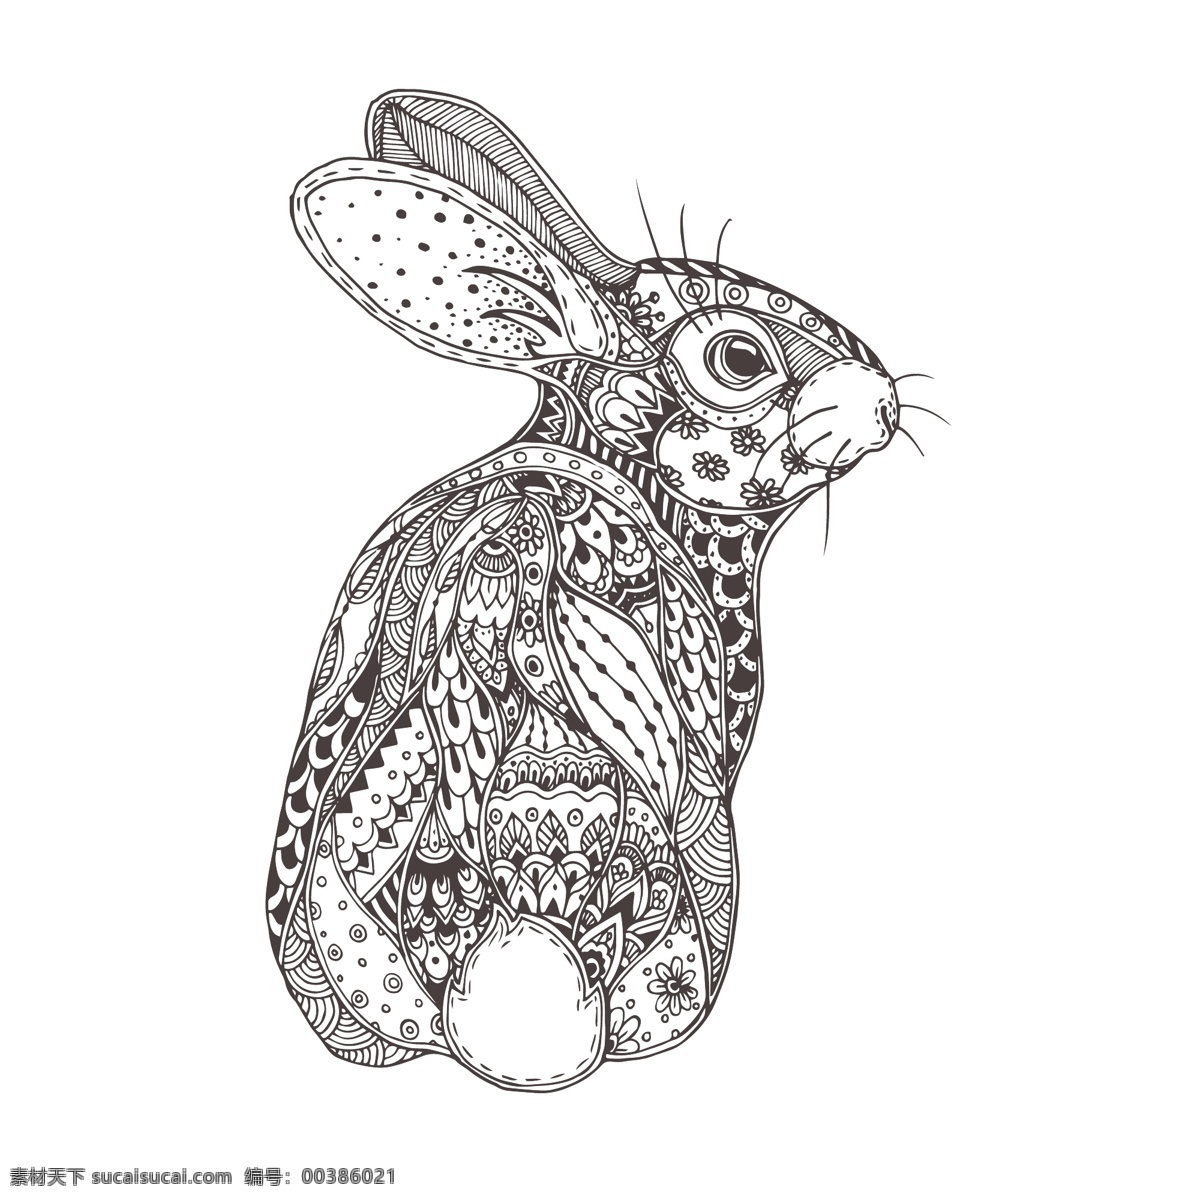 波西 米亚 风格 兔子 插画 卡通兔子 花纹 动物 动物插图 卡通动物漫画 其他生物 生物世界 矢量素材